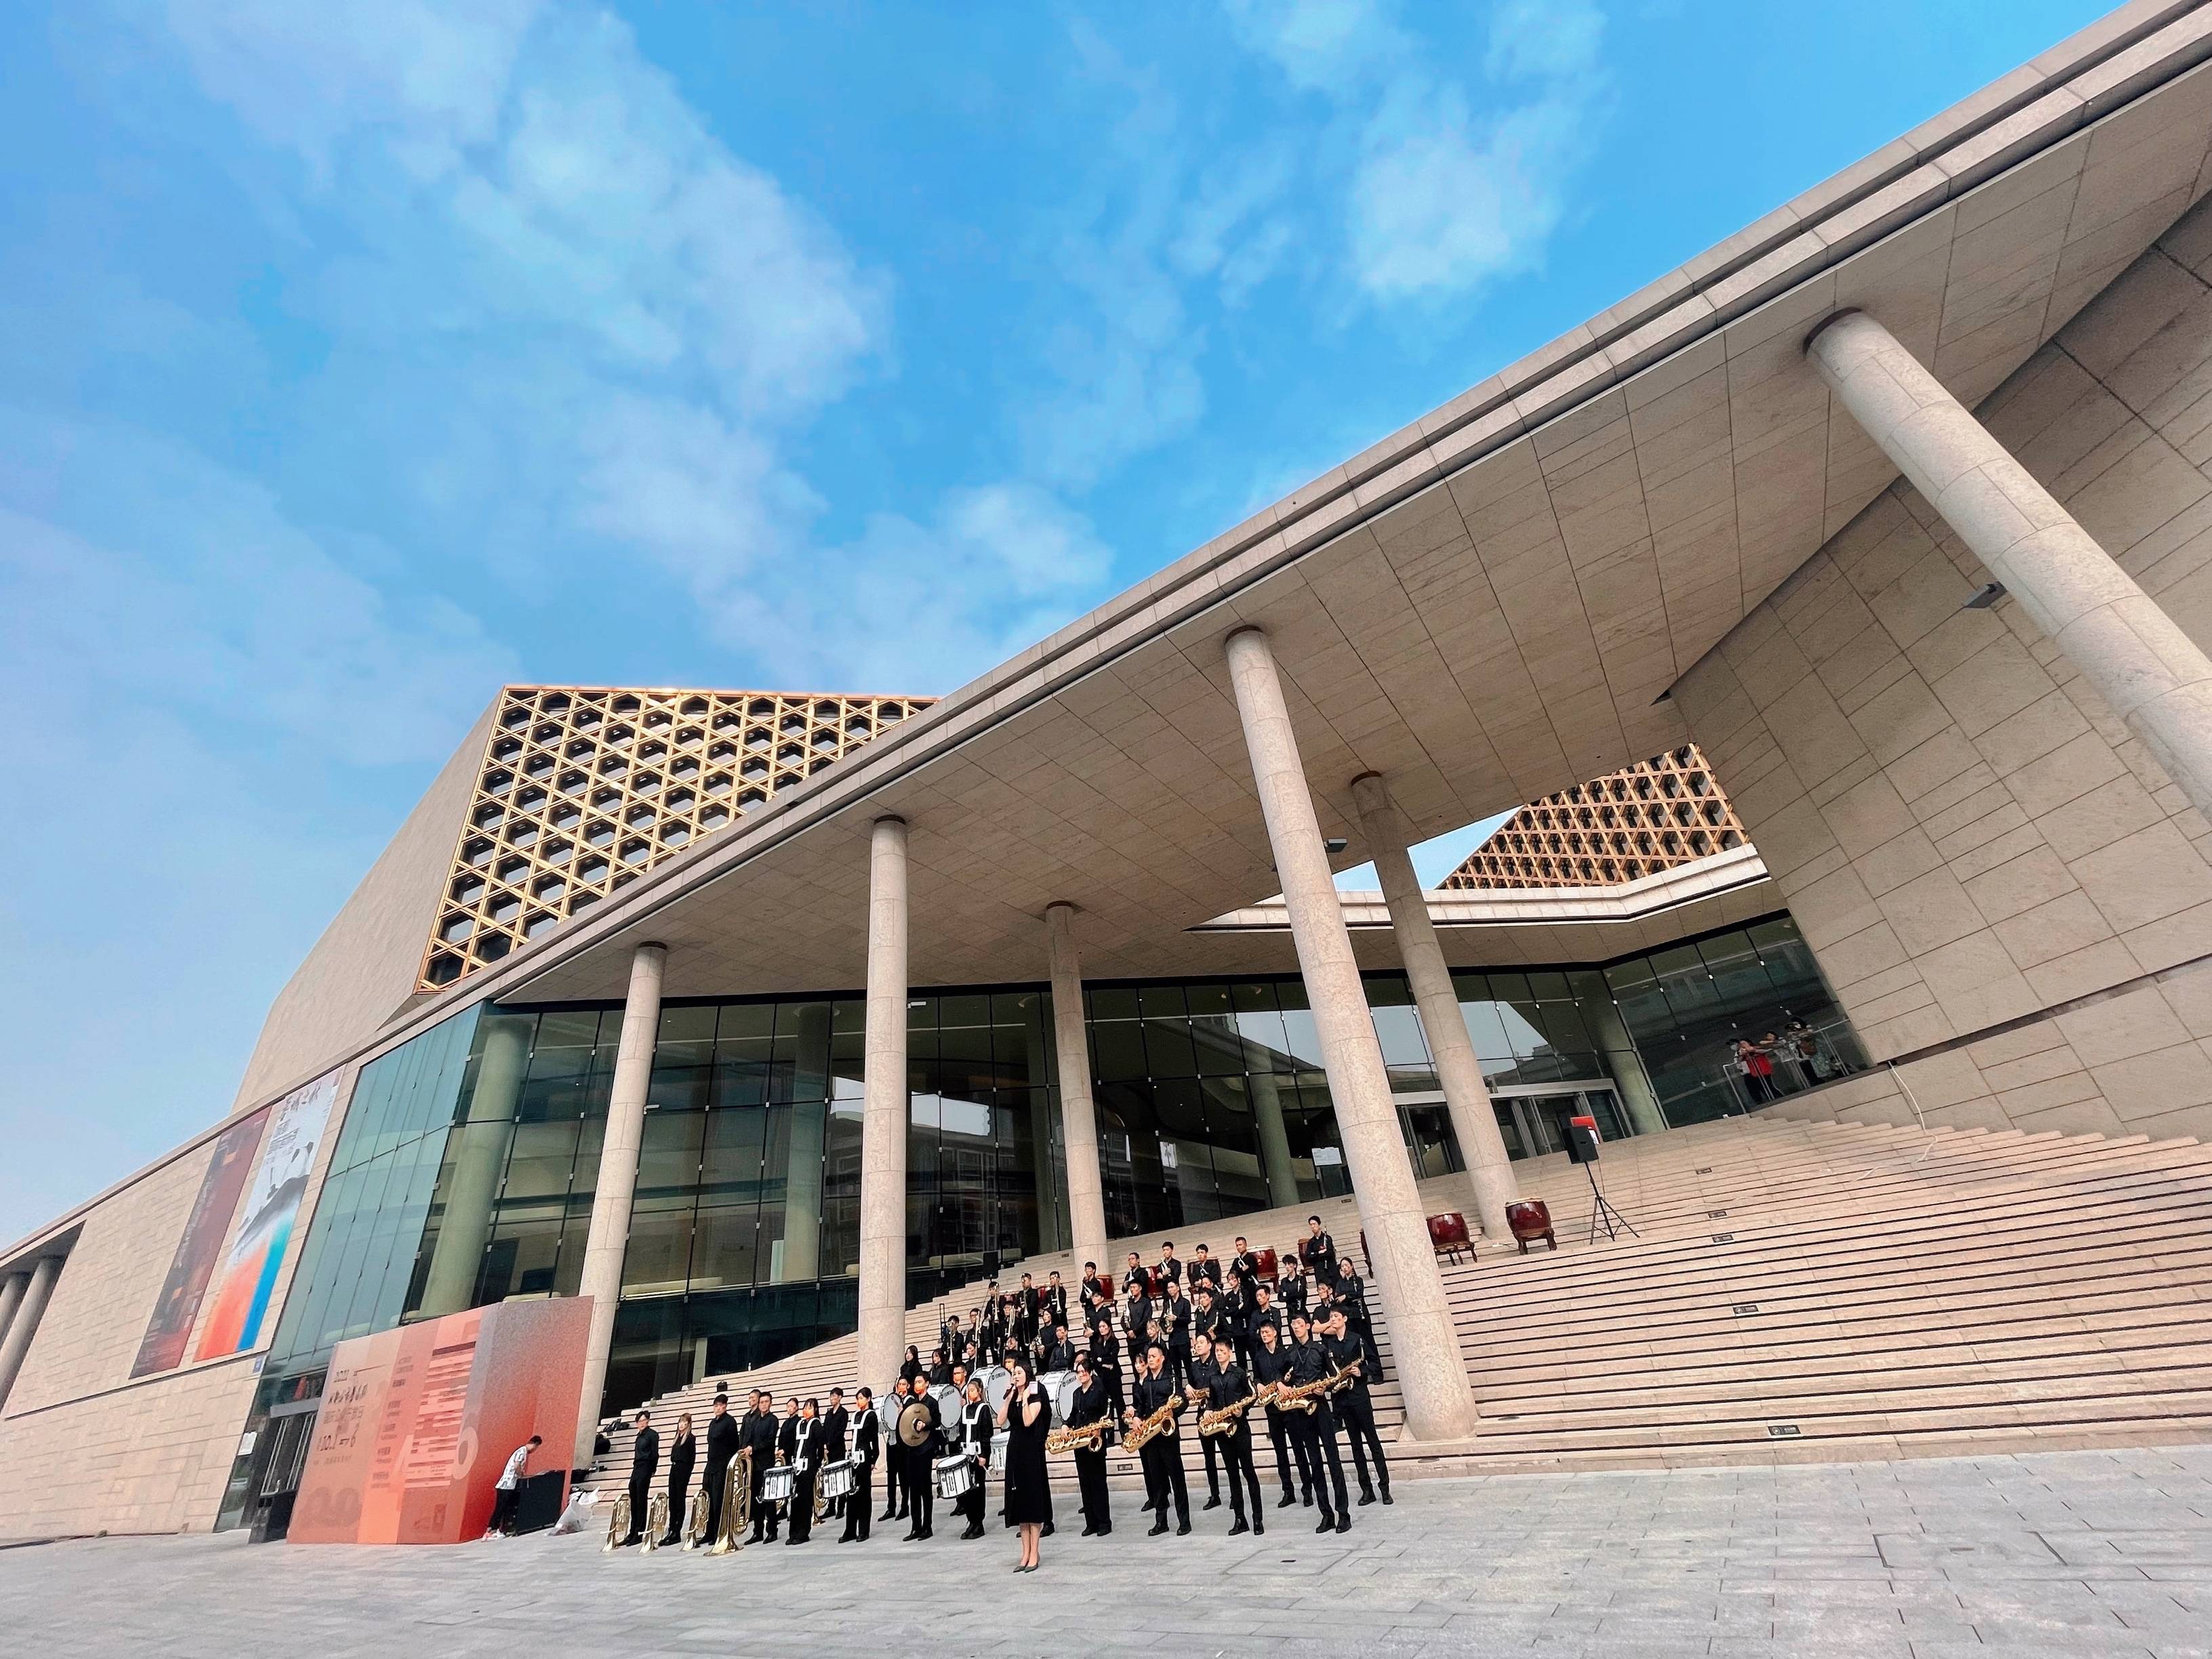 成都城市音乐厅"国庆公众开放日"拉满节日氛围感,为市民献上丰富艺术